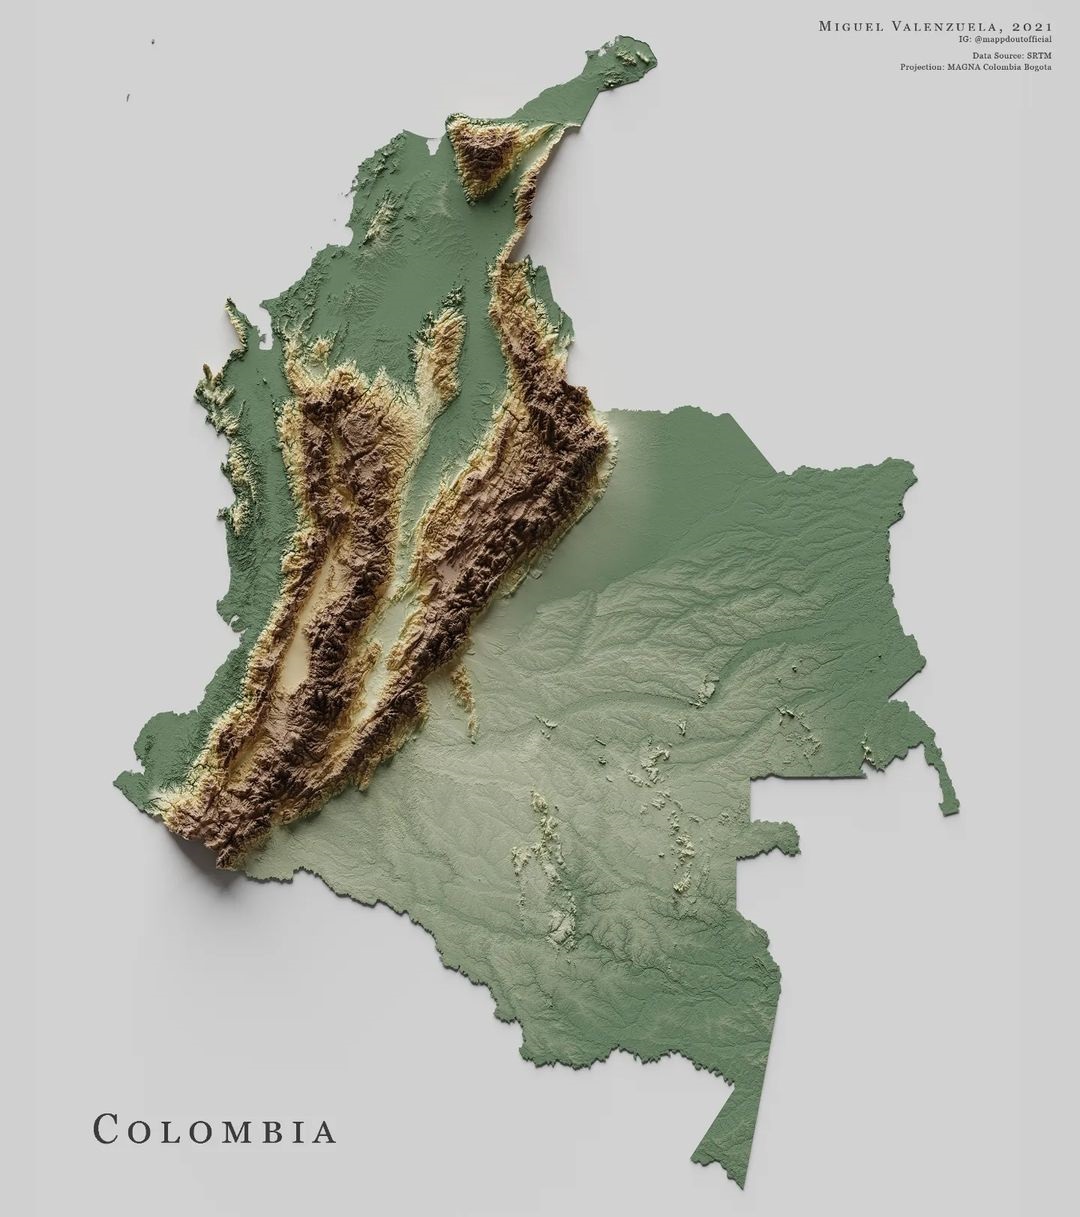 Mapa de relieve de Colombia, por Miguel Valenzuela (2022)